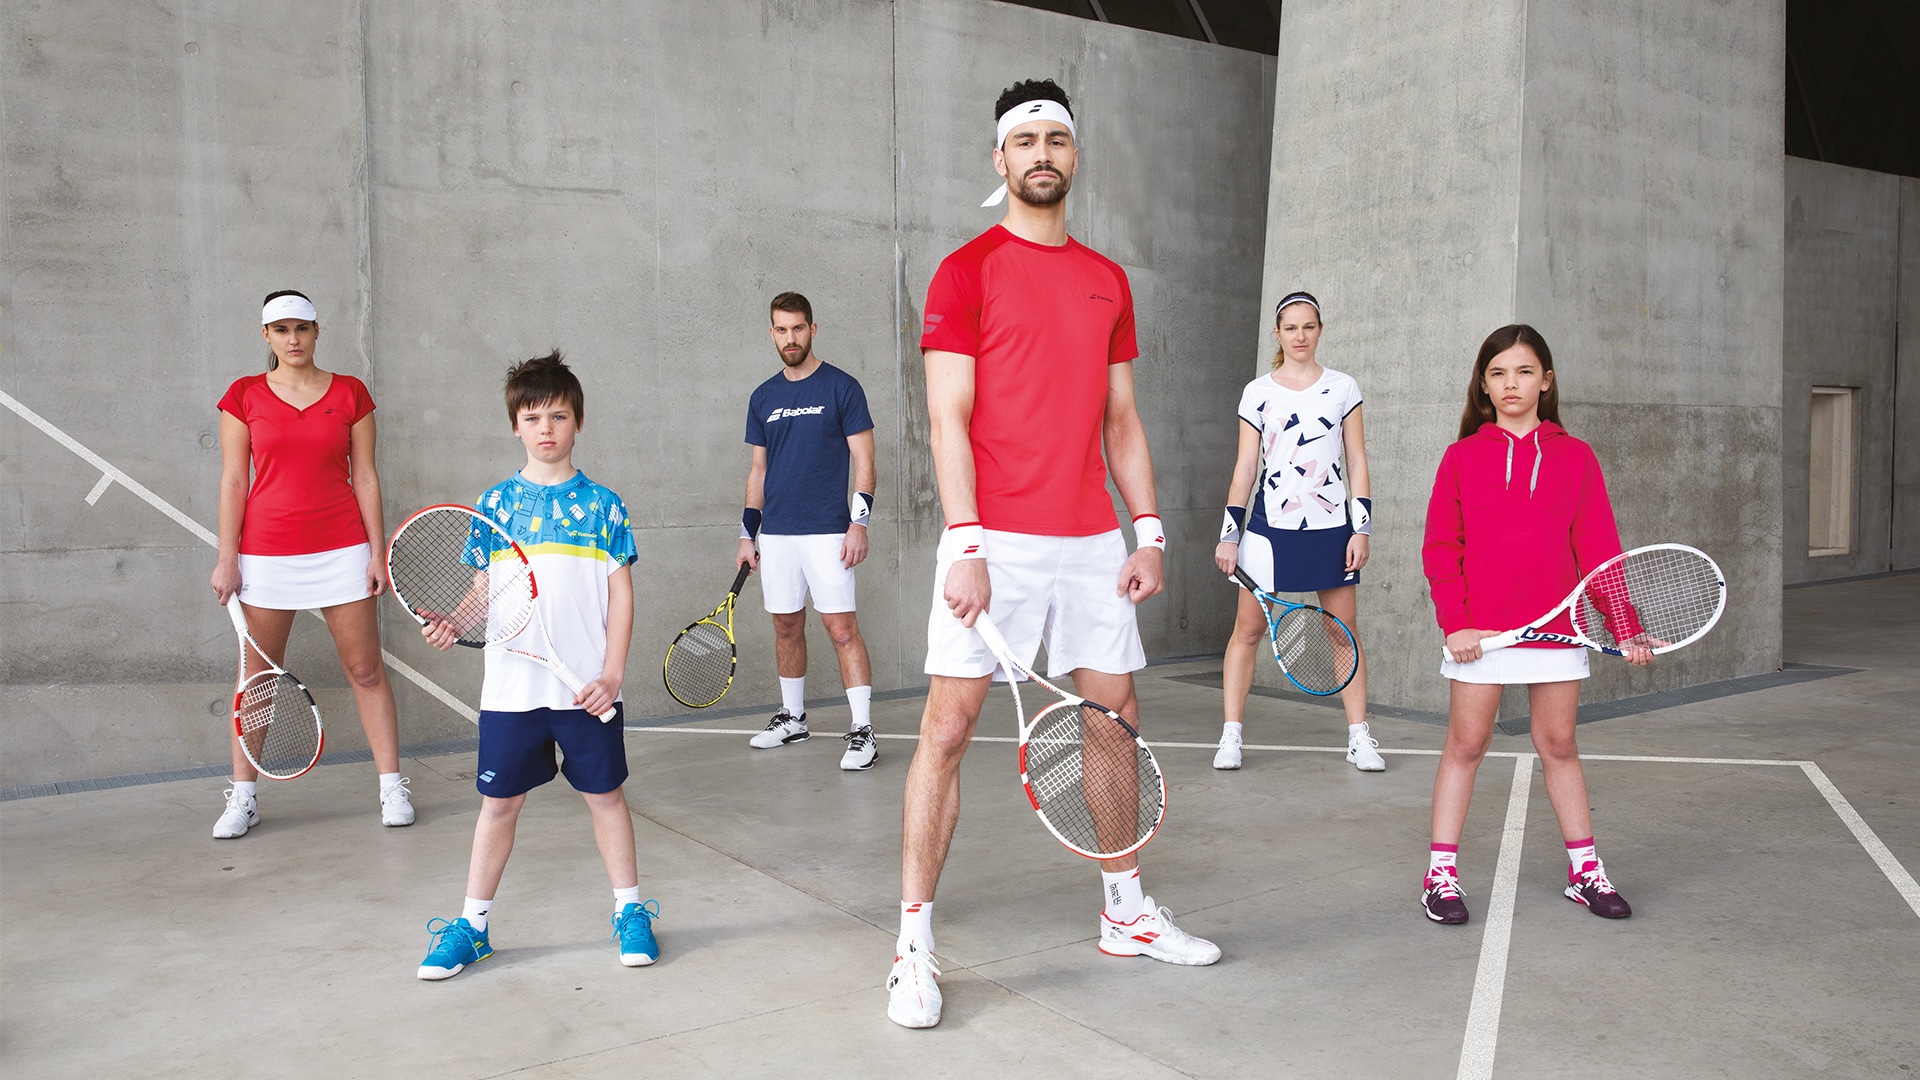 Zobacz wideo z kolekcją odzieży tenisowej Babolat 2020